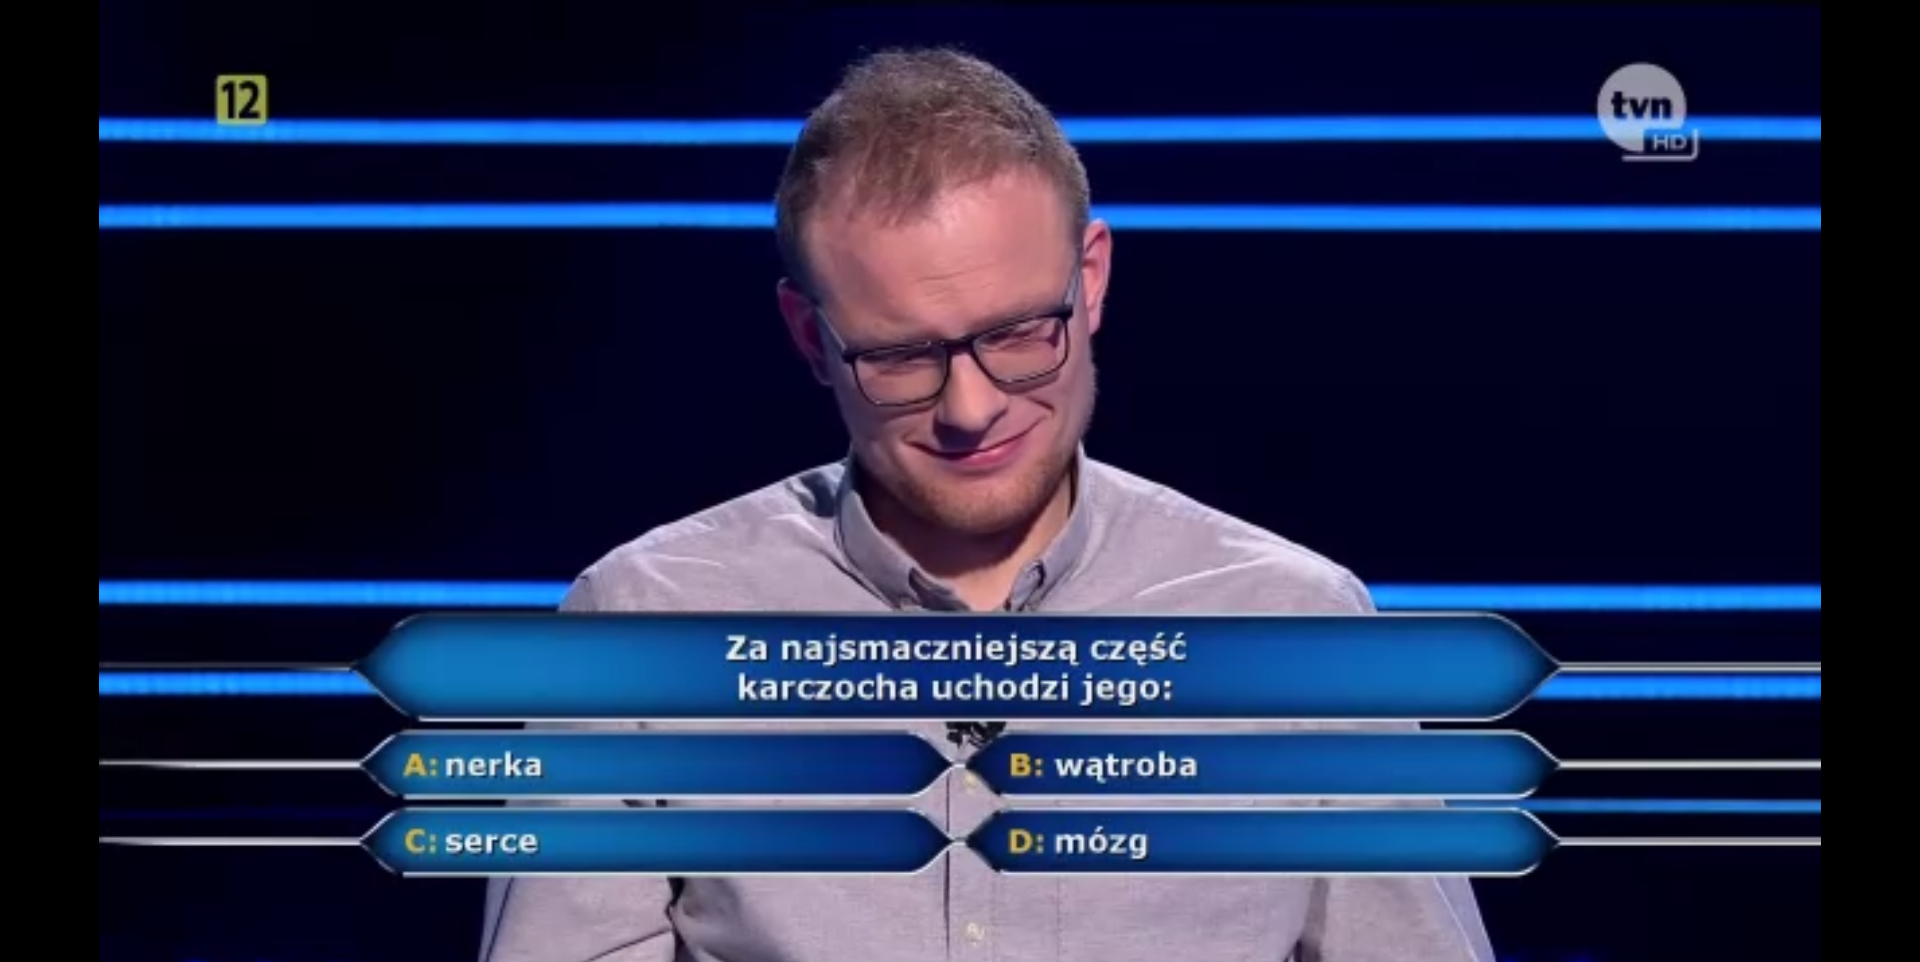 Milionerzy" podchwytliwe pytania na drodze do miliona. - Plejada.pl